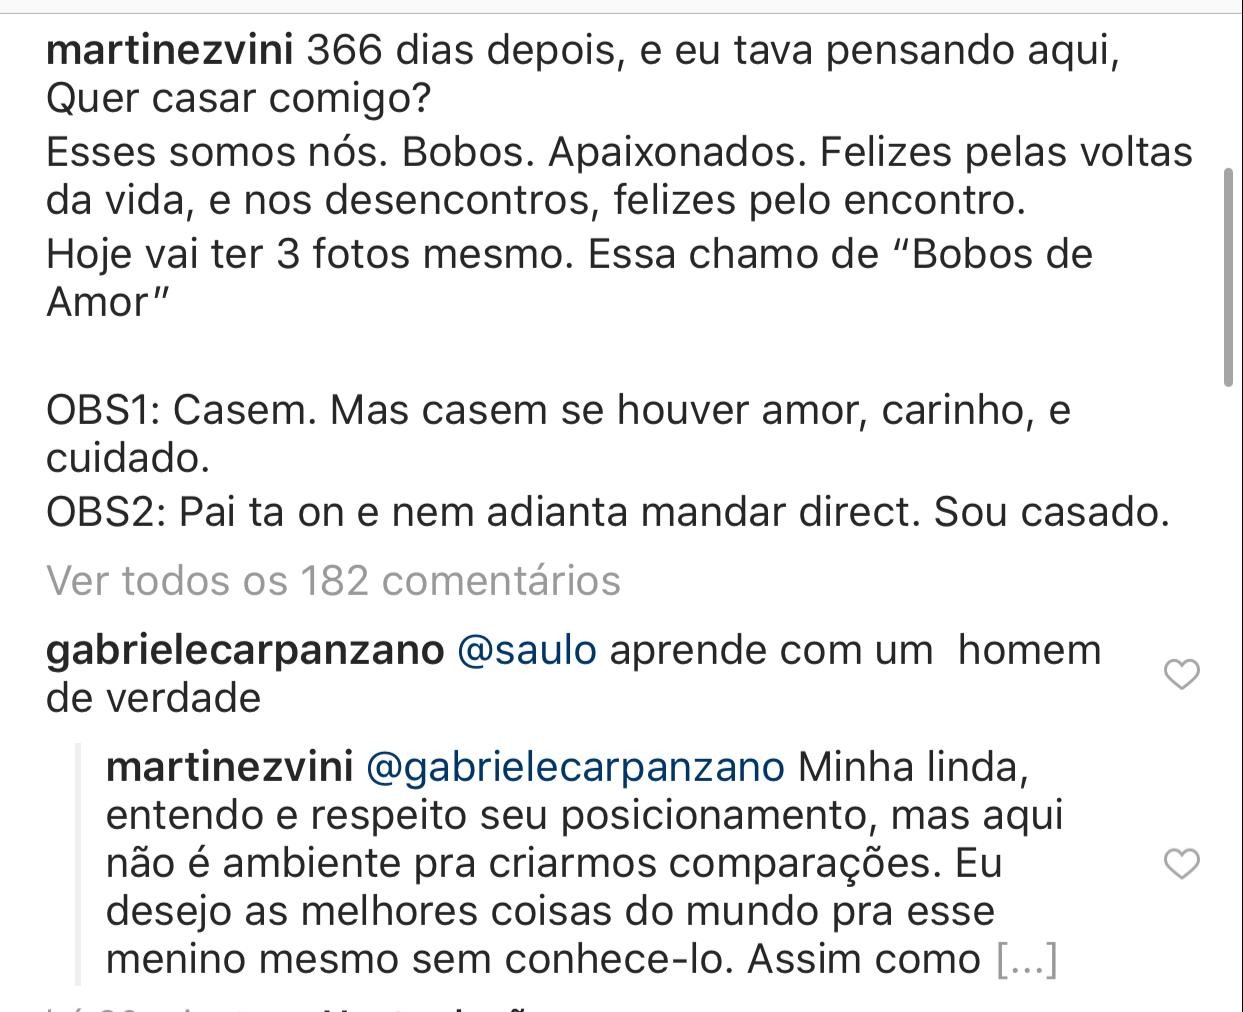 Vinicius Martinez rebate comparações com Saulo Poncio (Foto: Reprodução/Instagram )